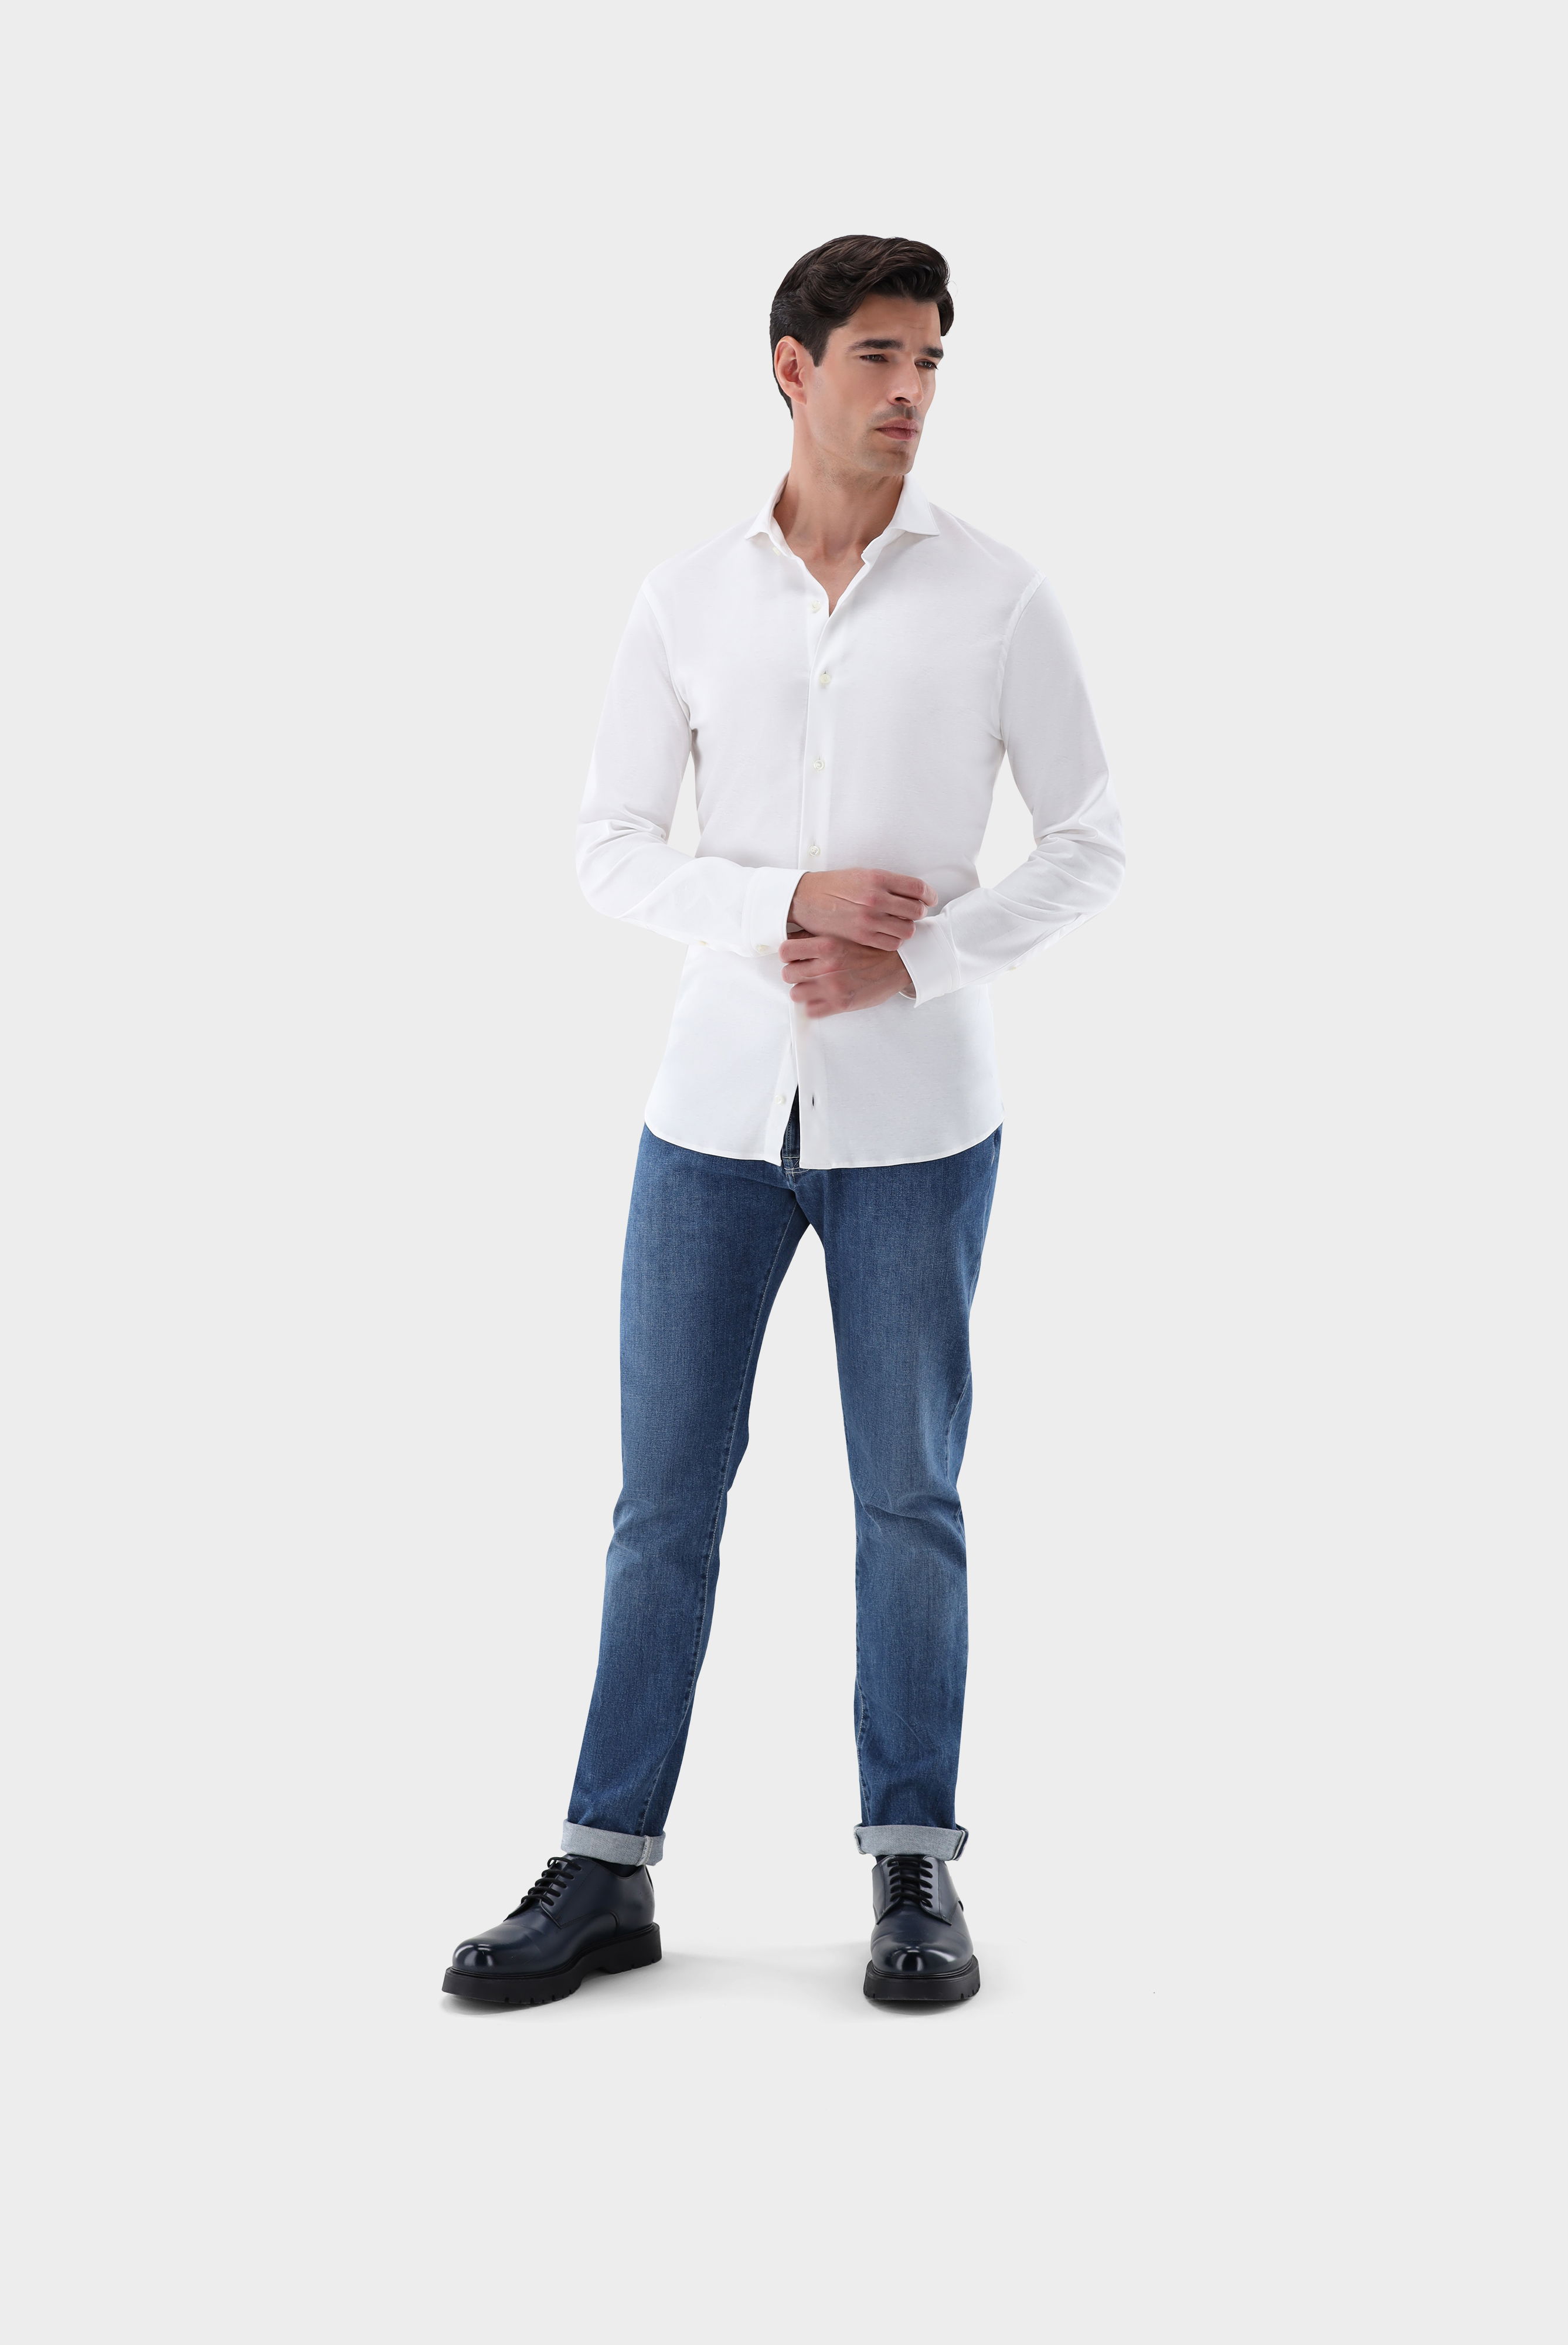 Jersey Hemden+Jersey Hemd aus Schweizer Baumwolle Slim Fit+20.1682.UC.180031.000.X3L